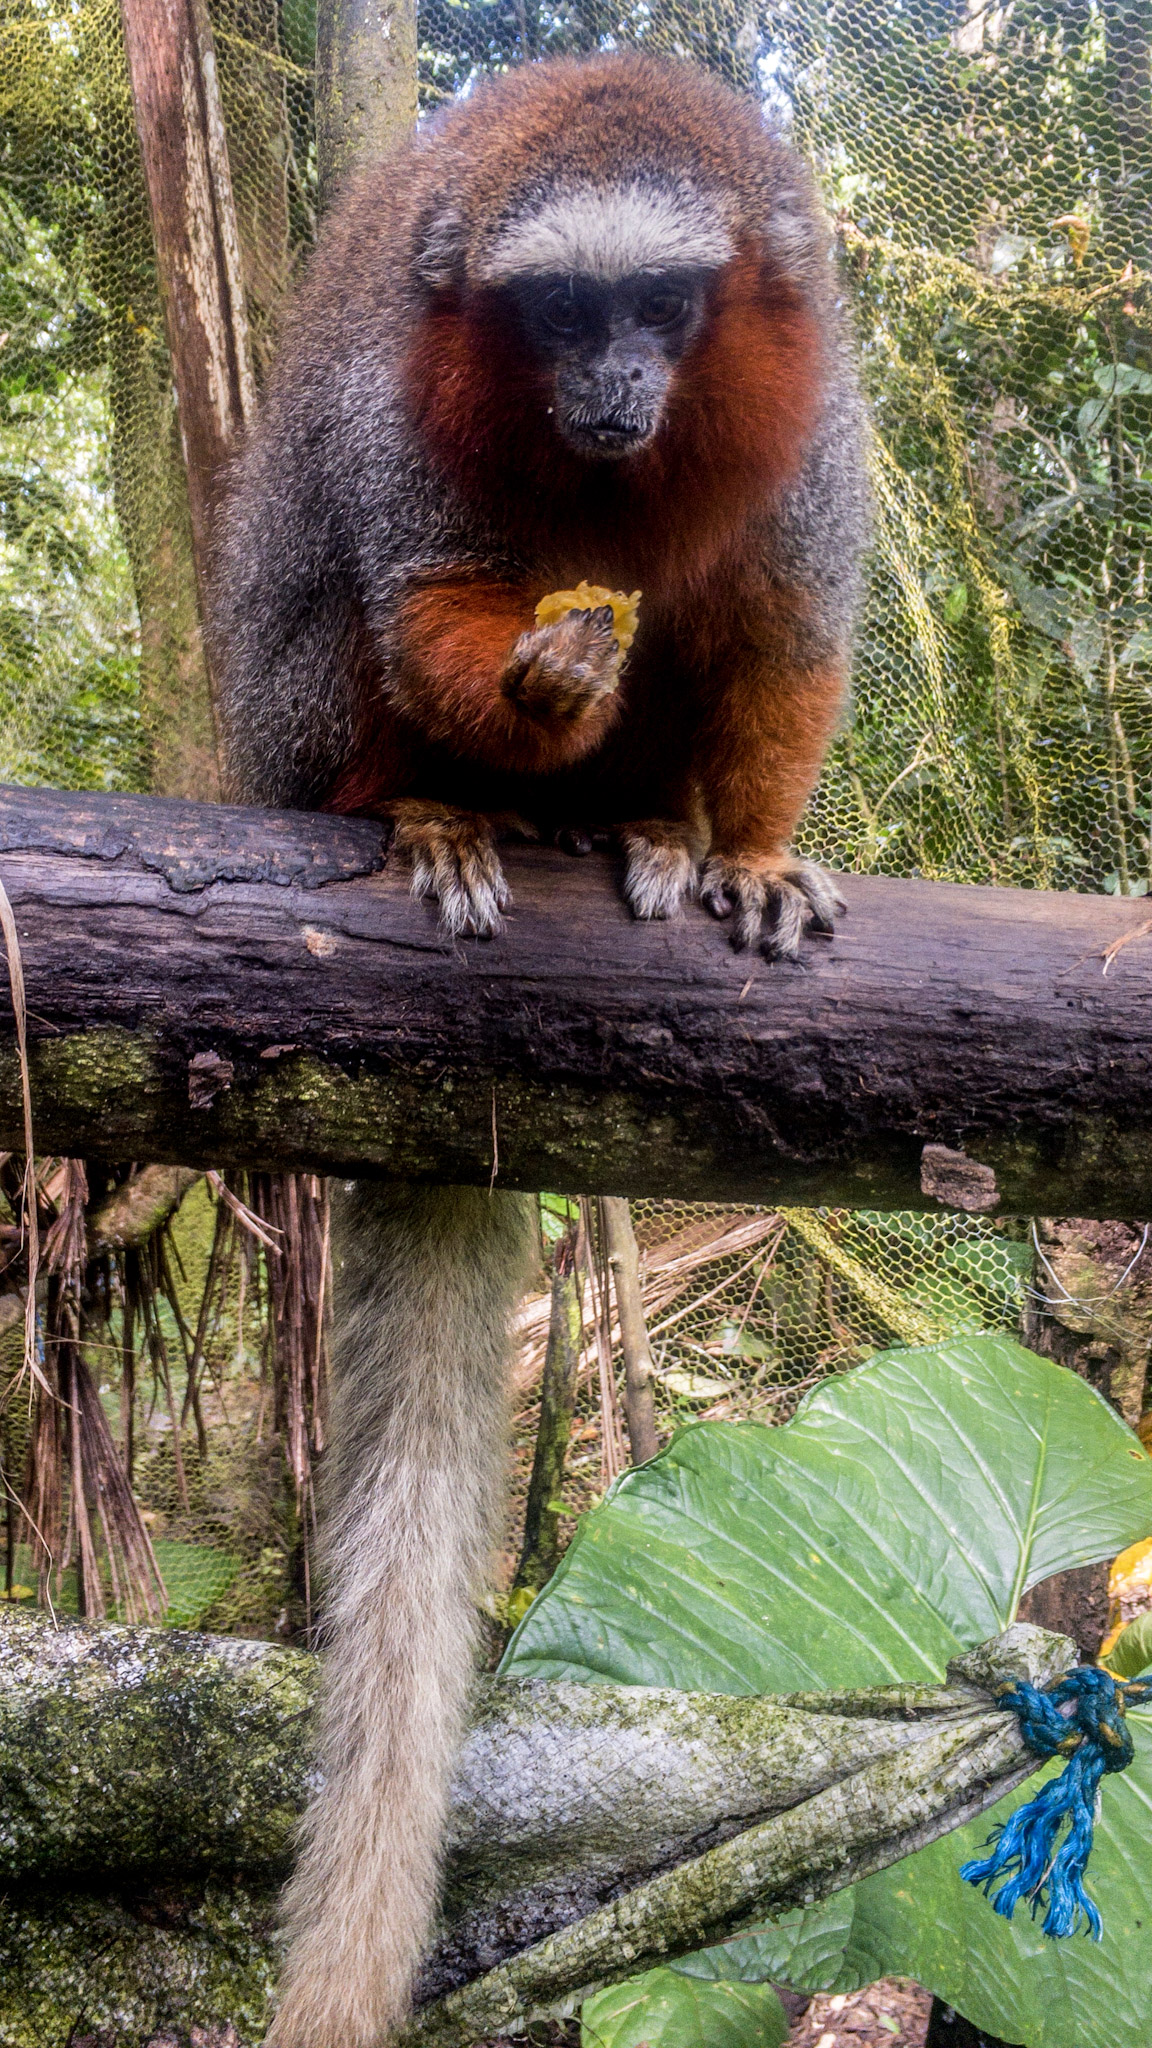 Songo Songo monkey in the Amazon